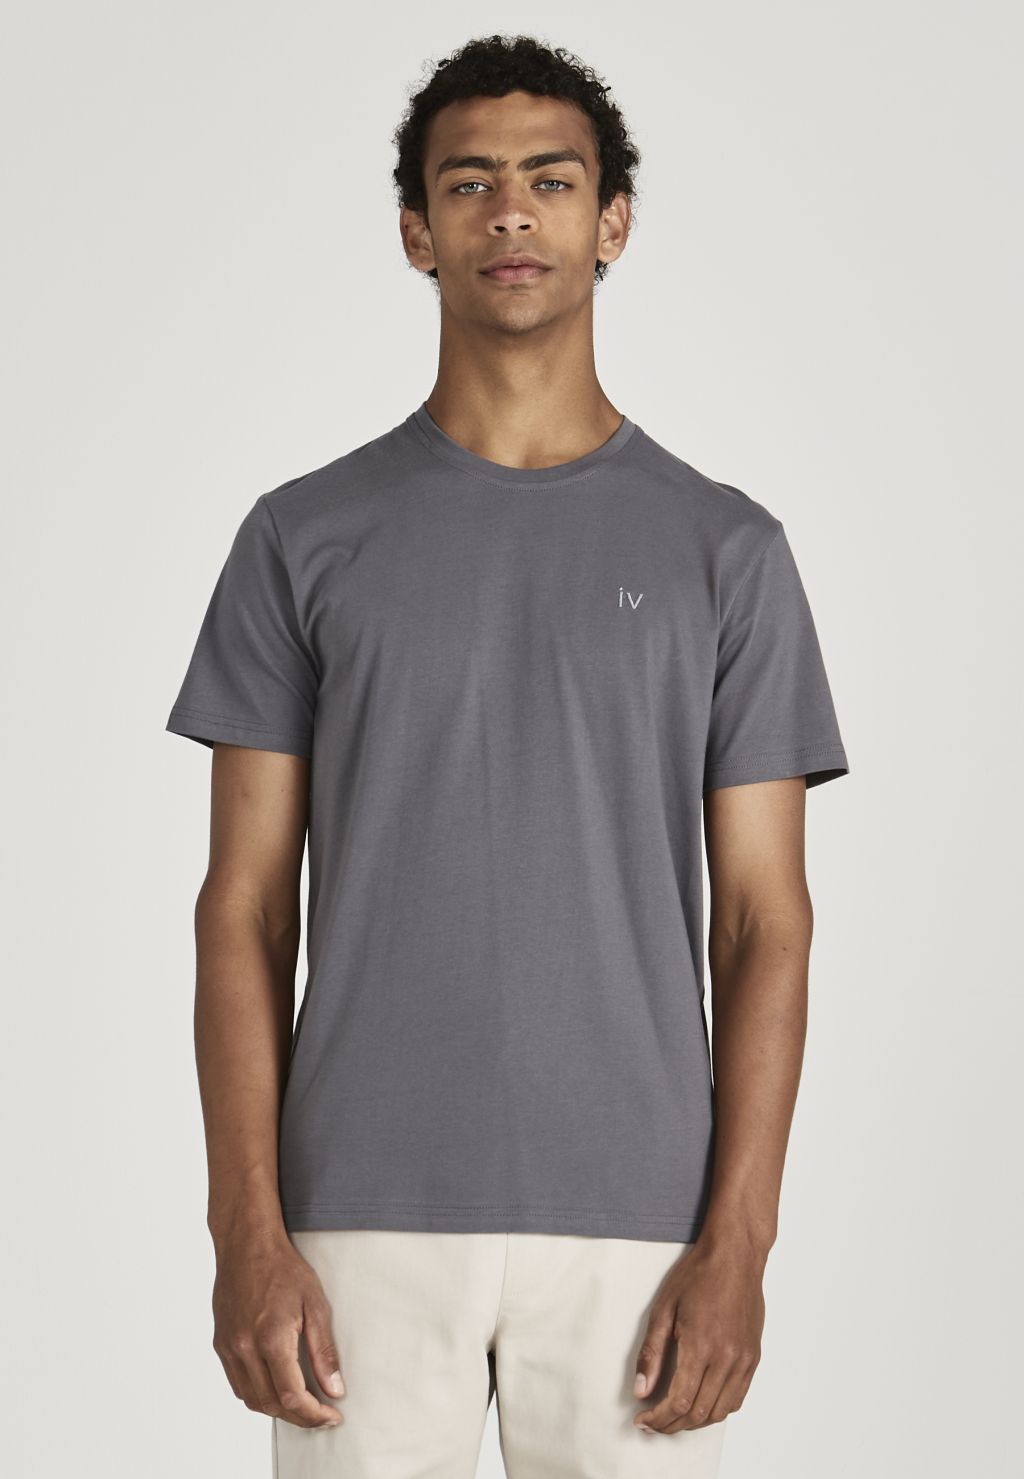 Colby (Iv) - T-Shirt - Bio-Baumwolle - Shadow Grey M